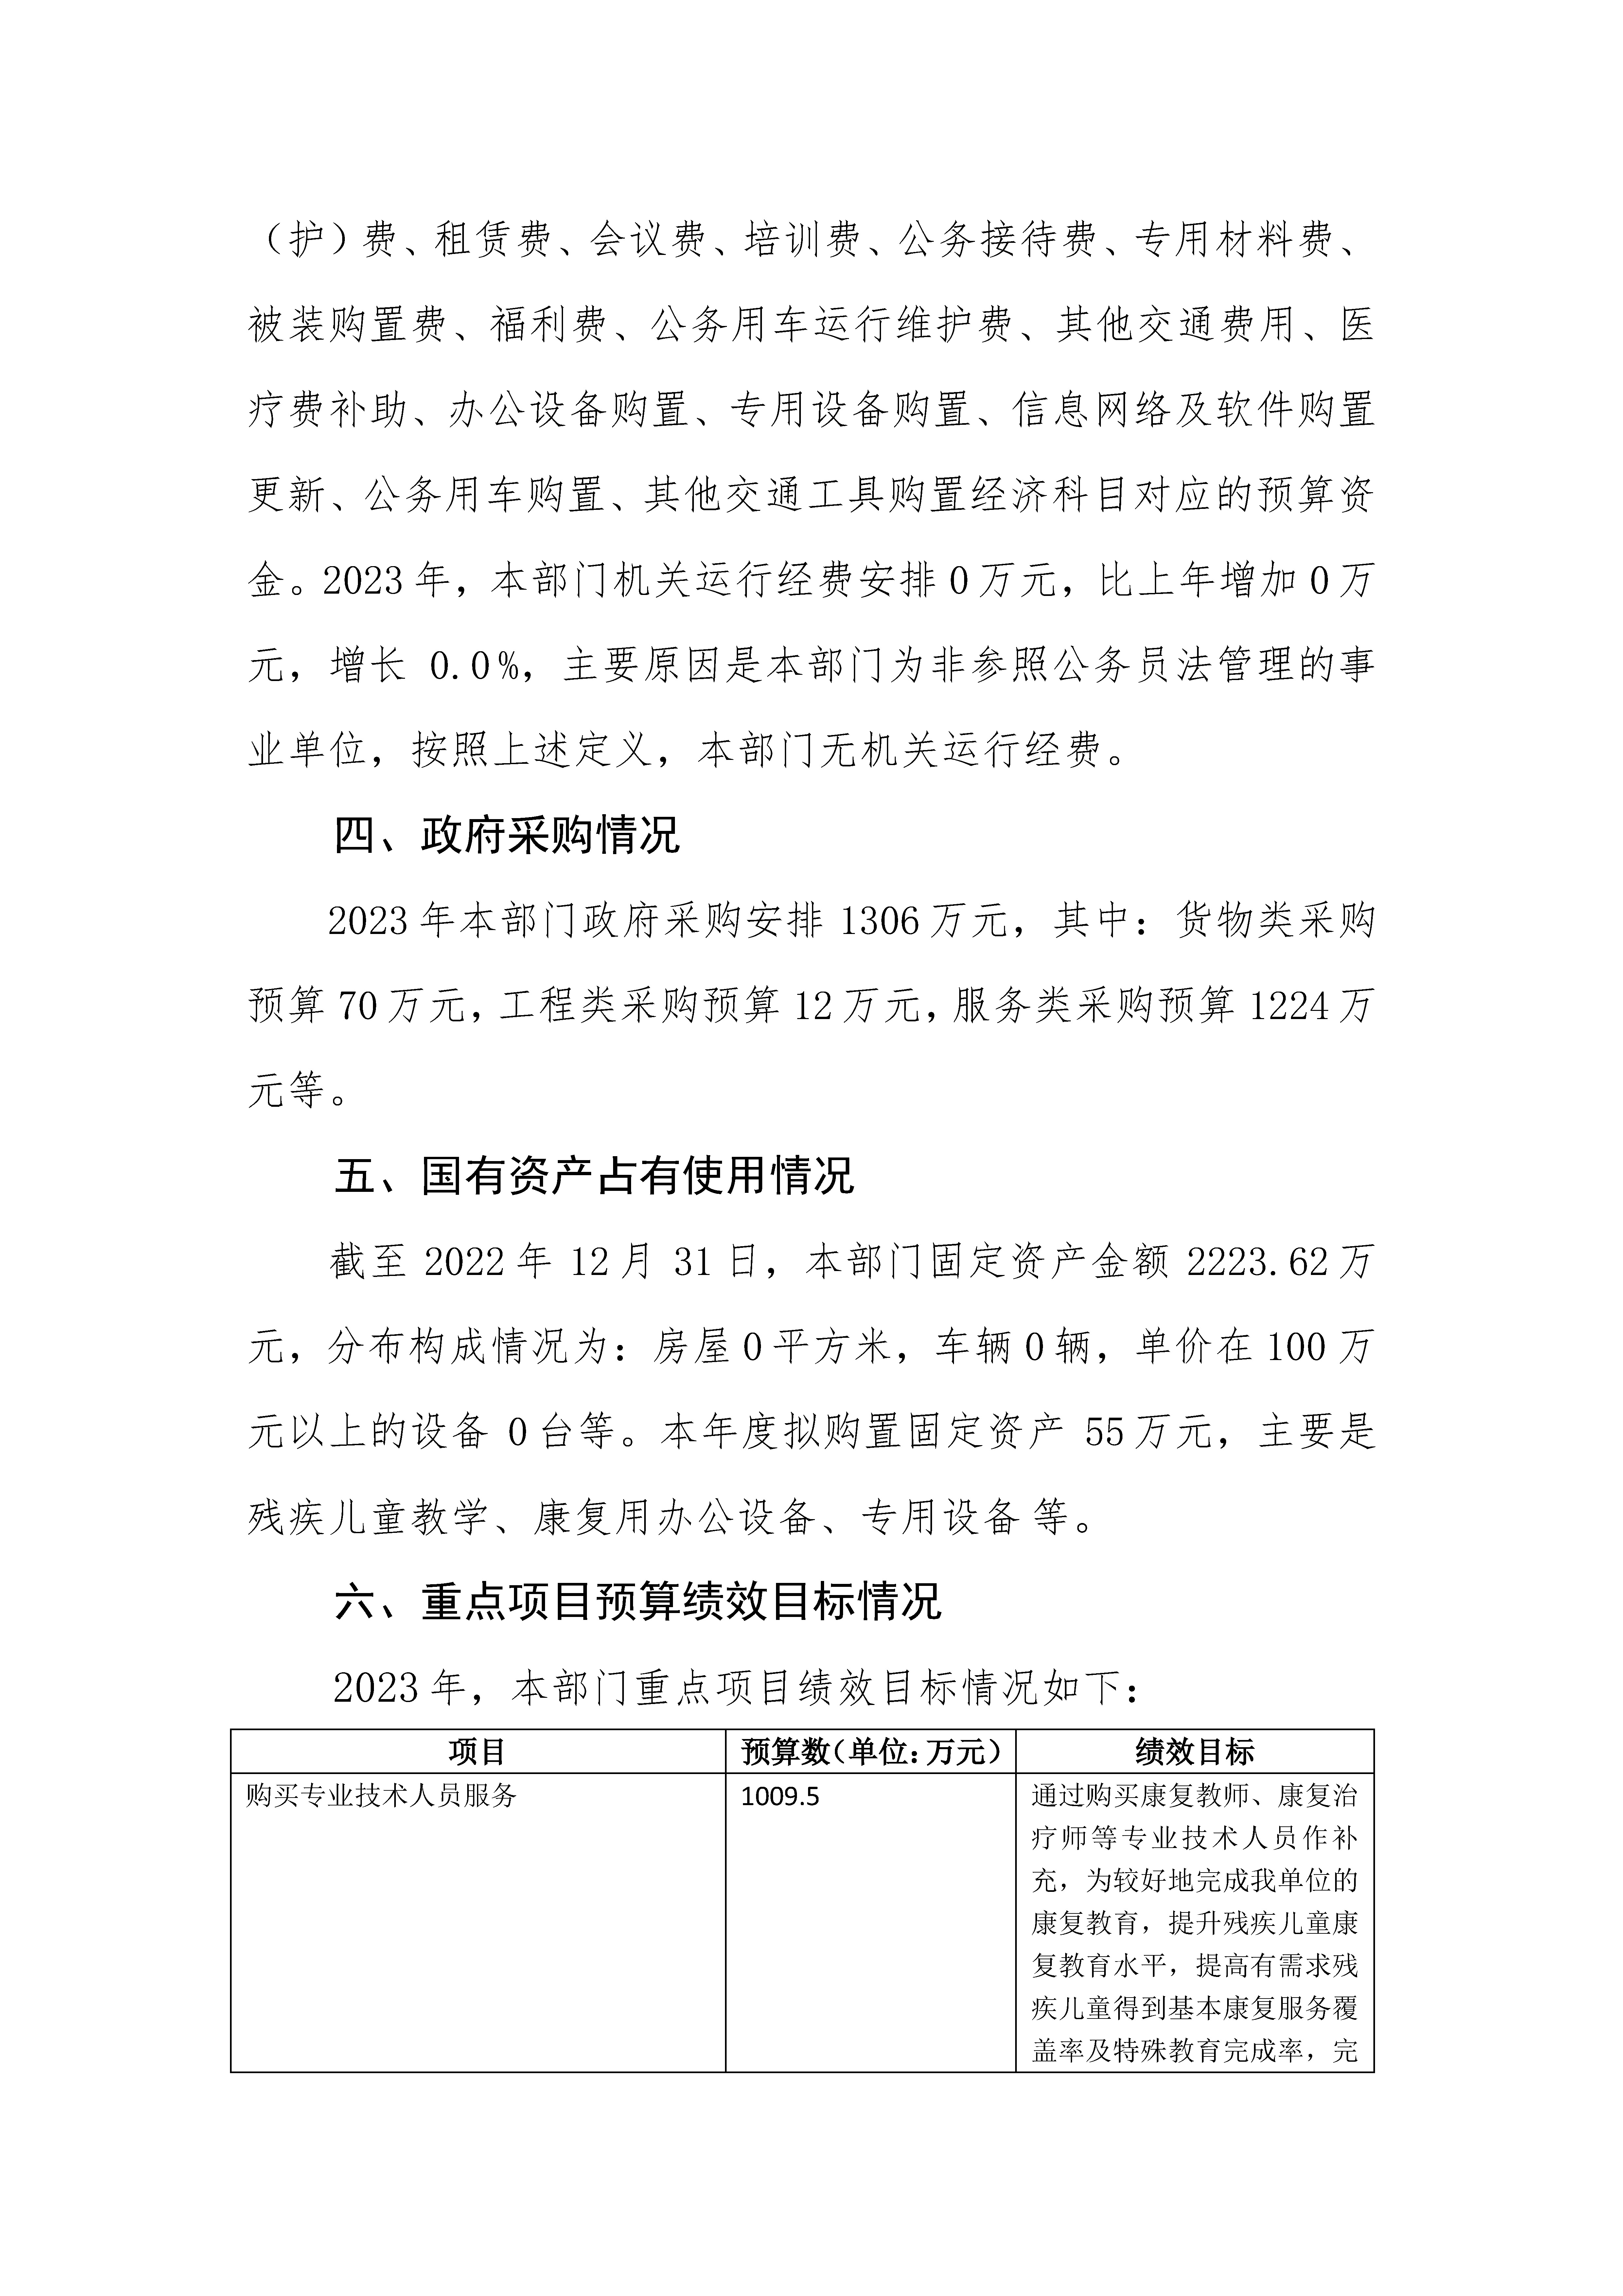 2023年广东省残疾人康复中心部门预算_页面_23.jpg